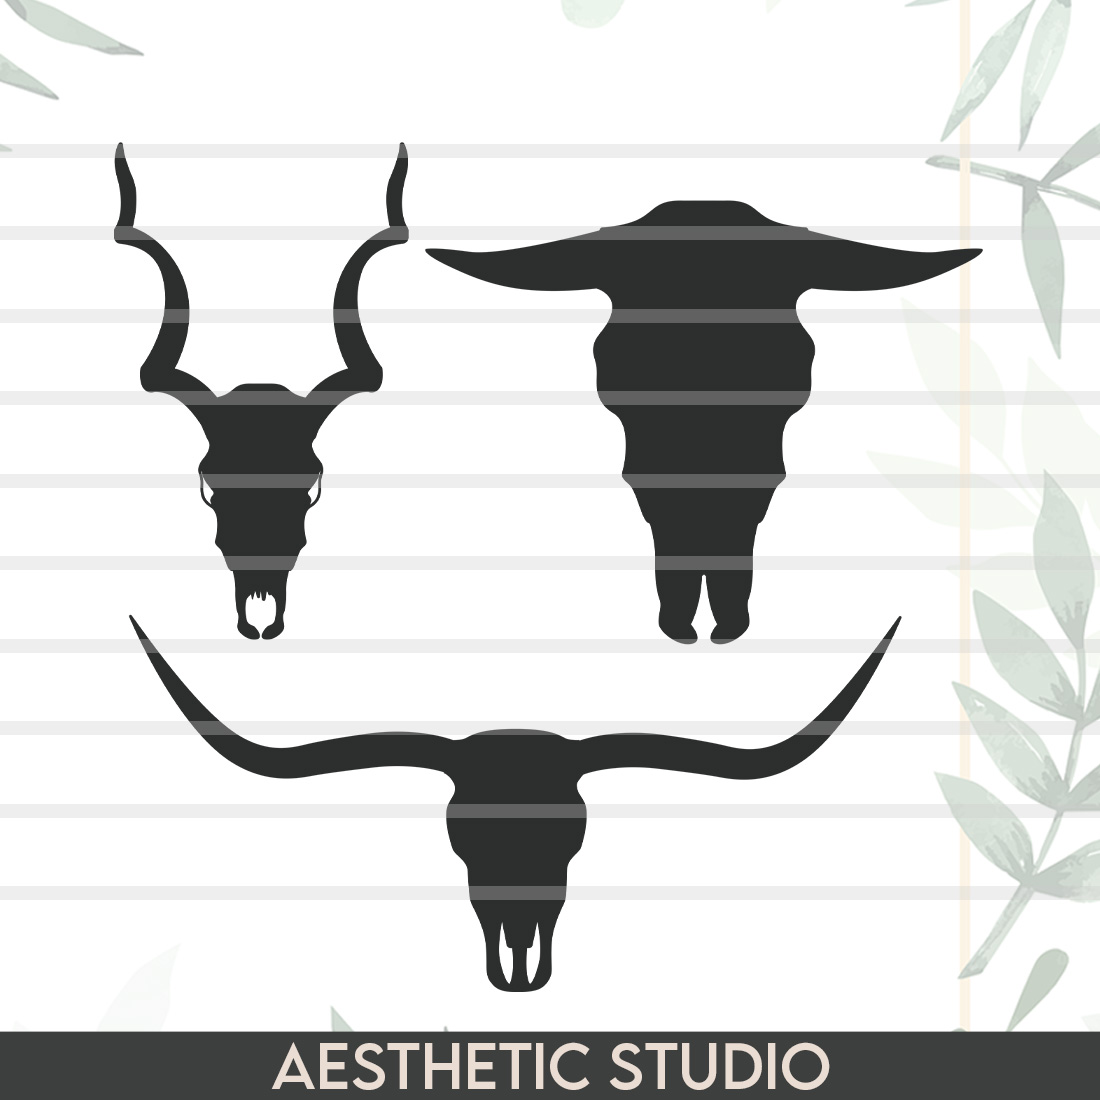 longhorn head silhouette